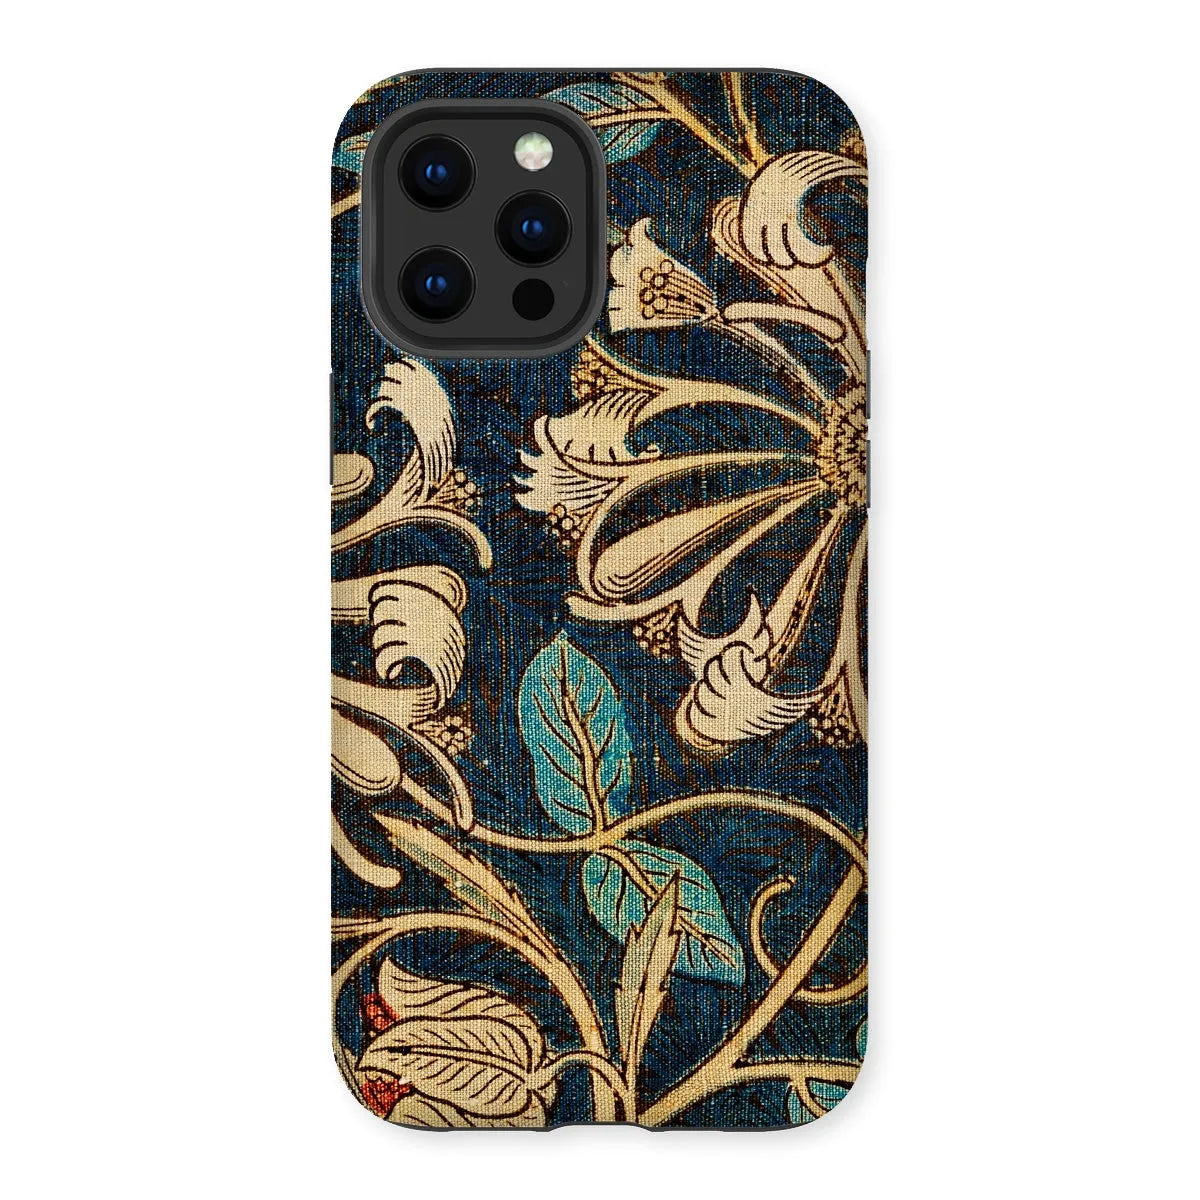 Honeysuckle 3 - Floral Aesthetic Phone Case - William Morris - Iphone 12 Pro Max / Matte - Mobile Phone Cases